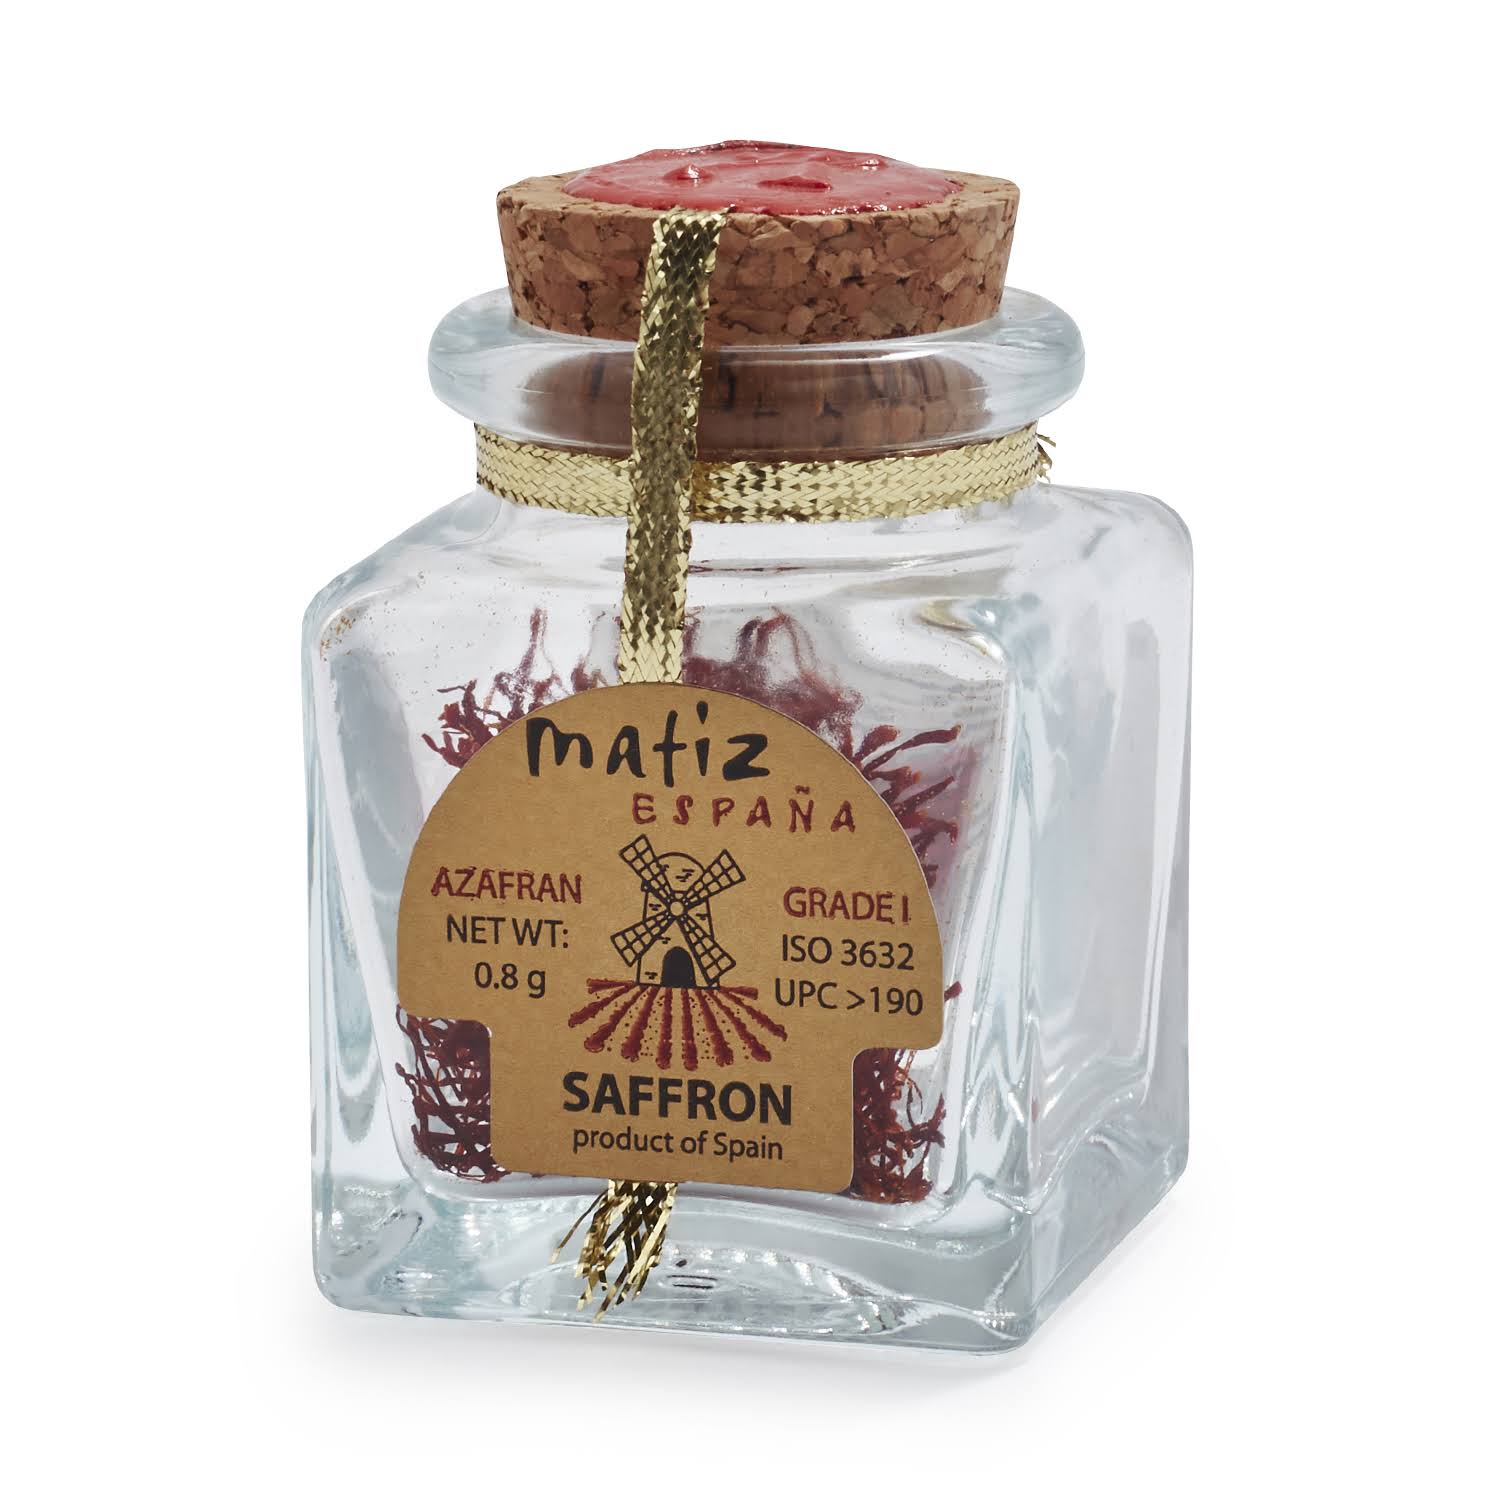 Azafran-Oro Premium Spanish Saffron Threads - Hand Picked, .8g